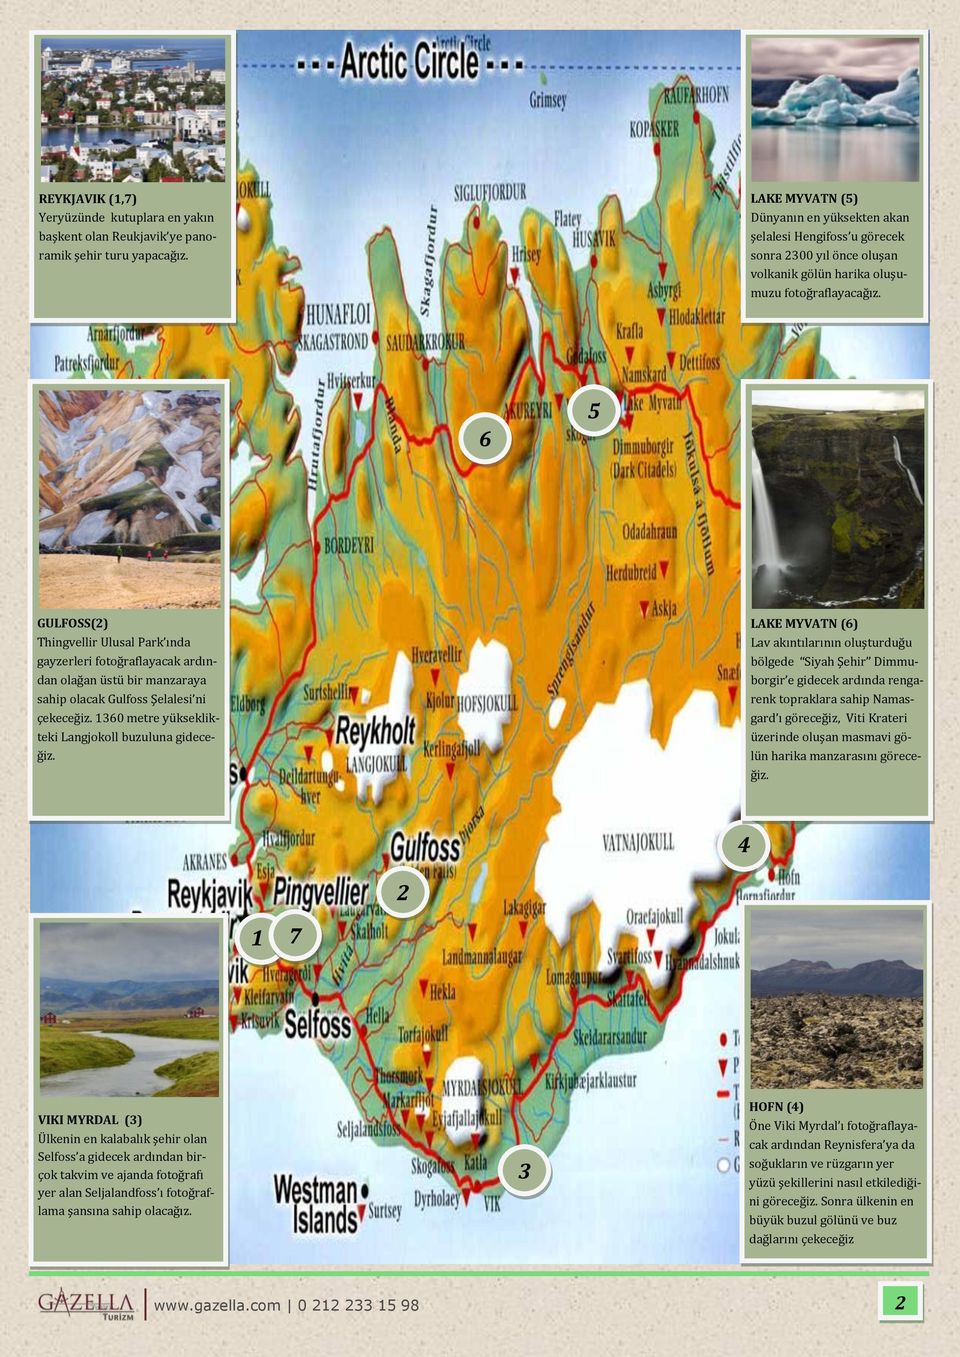 6 5 GULFOSS(2) Thingvellir Ulusal Park ında gayzerleri fotoğraflayacak ardından olağan üstü bir manzaraya sahip olacak Gulfoss Şelalesi ni çekeceğiz.